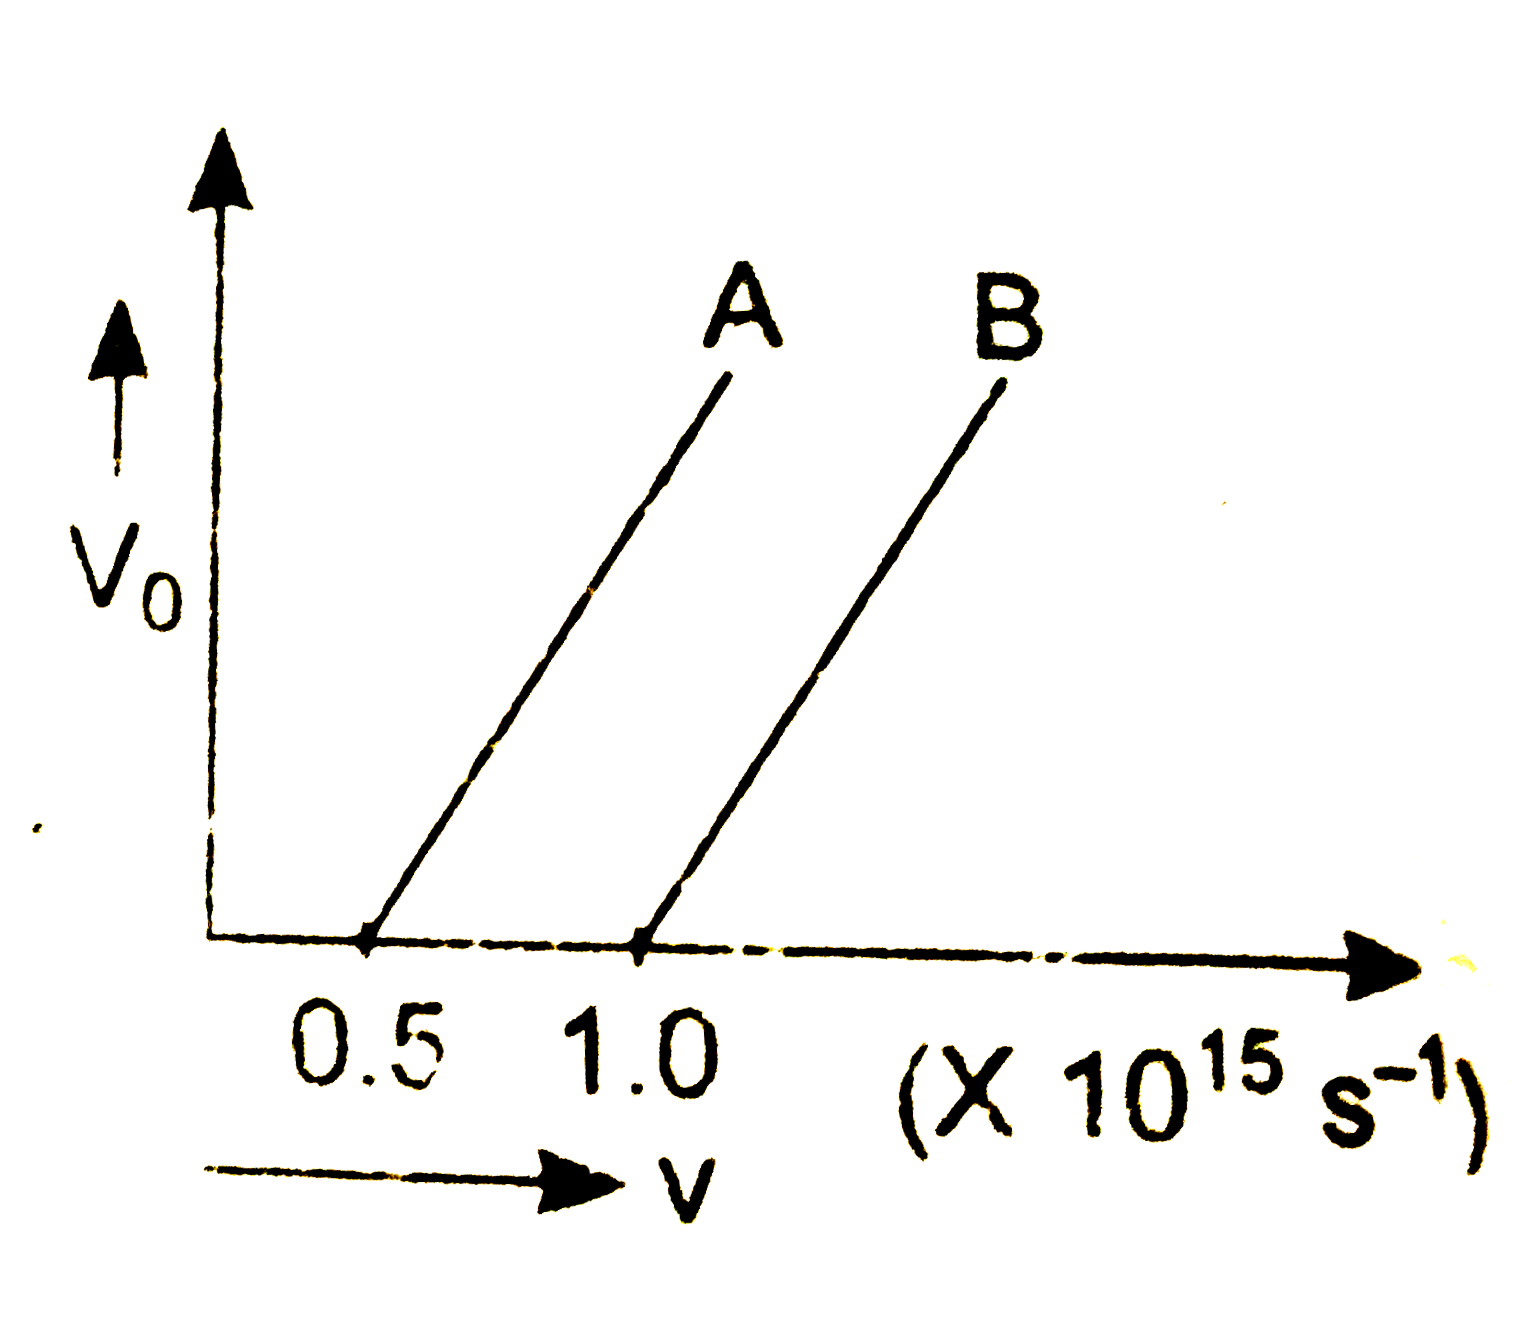 दो प्रकाश सुग्राही धातुओ A व B के लिए आपतित विकिरण की आवृति V में परिवर्तन के साथ निरोधी में परिवर्तन को सलग्न ग्राफ में दर्शाया गया है ।   (i)  किस धातु की देहली तरंगदैर्ध्य अधिक है ? कारण दीजिए ।   (ii)  समान तरंगदैर्ध्य के आपतित विकिरण के लिए कौन -सी धातु अधिक गतिज ऊर्जा के इलेक्ट्रॉन मुक्त करती है , कारण स्पष्ट कीजिए ।